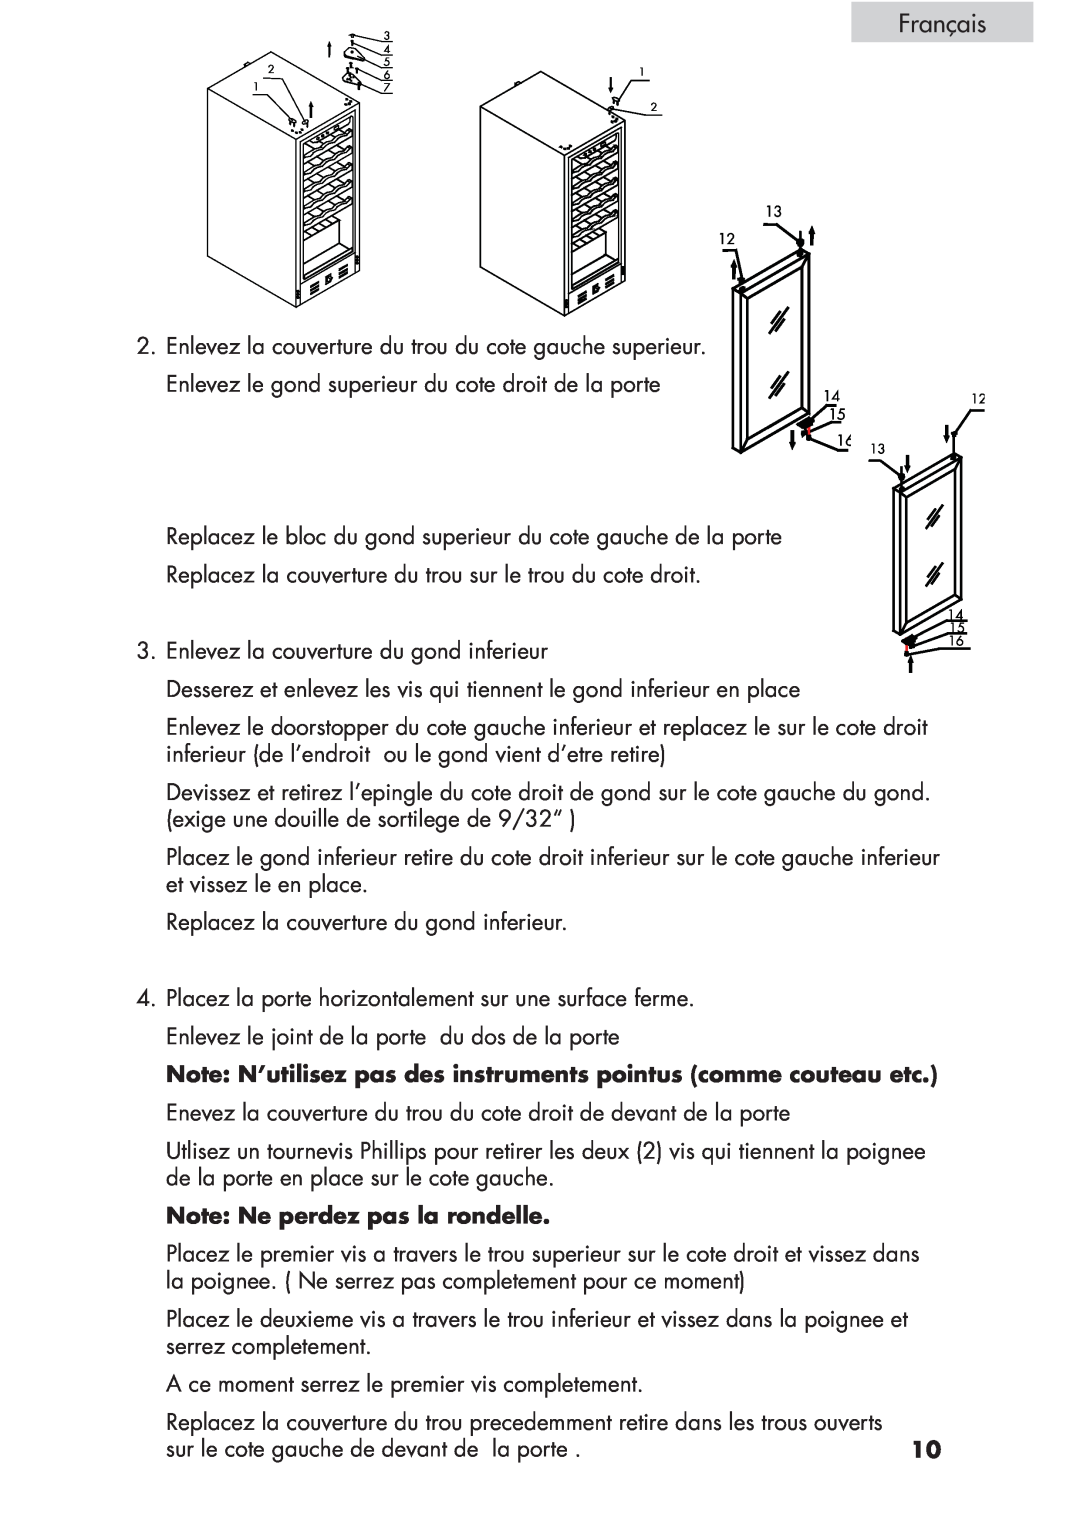 Haier HVCE15, HVCE24 user manual Français, Note: Ne perdez pas la rondelle 